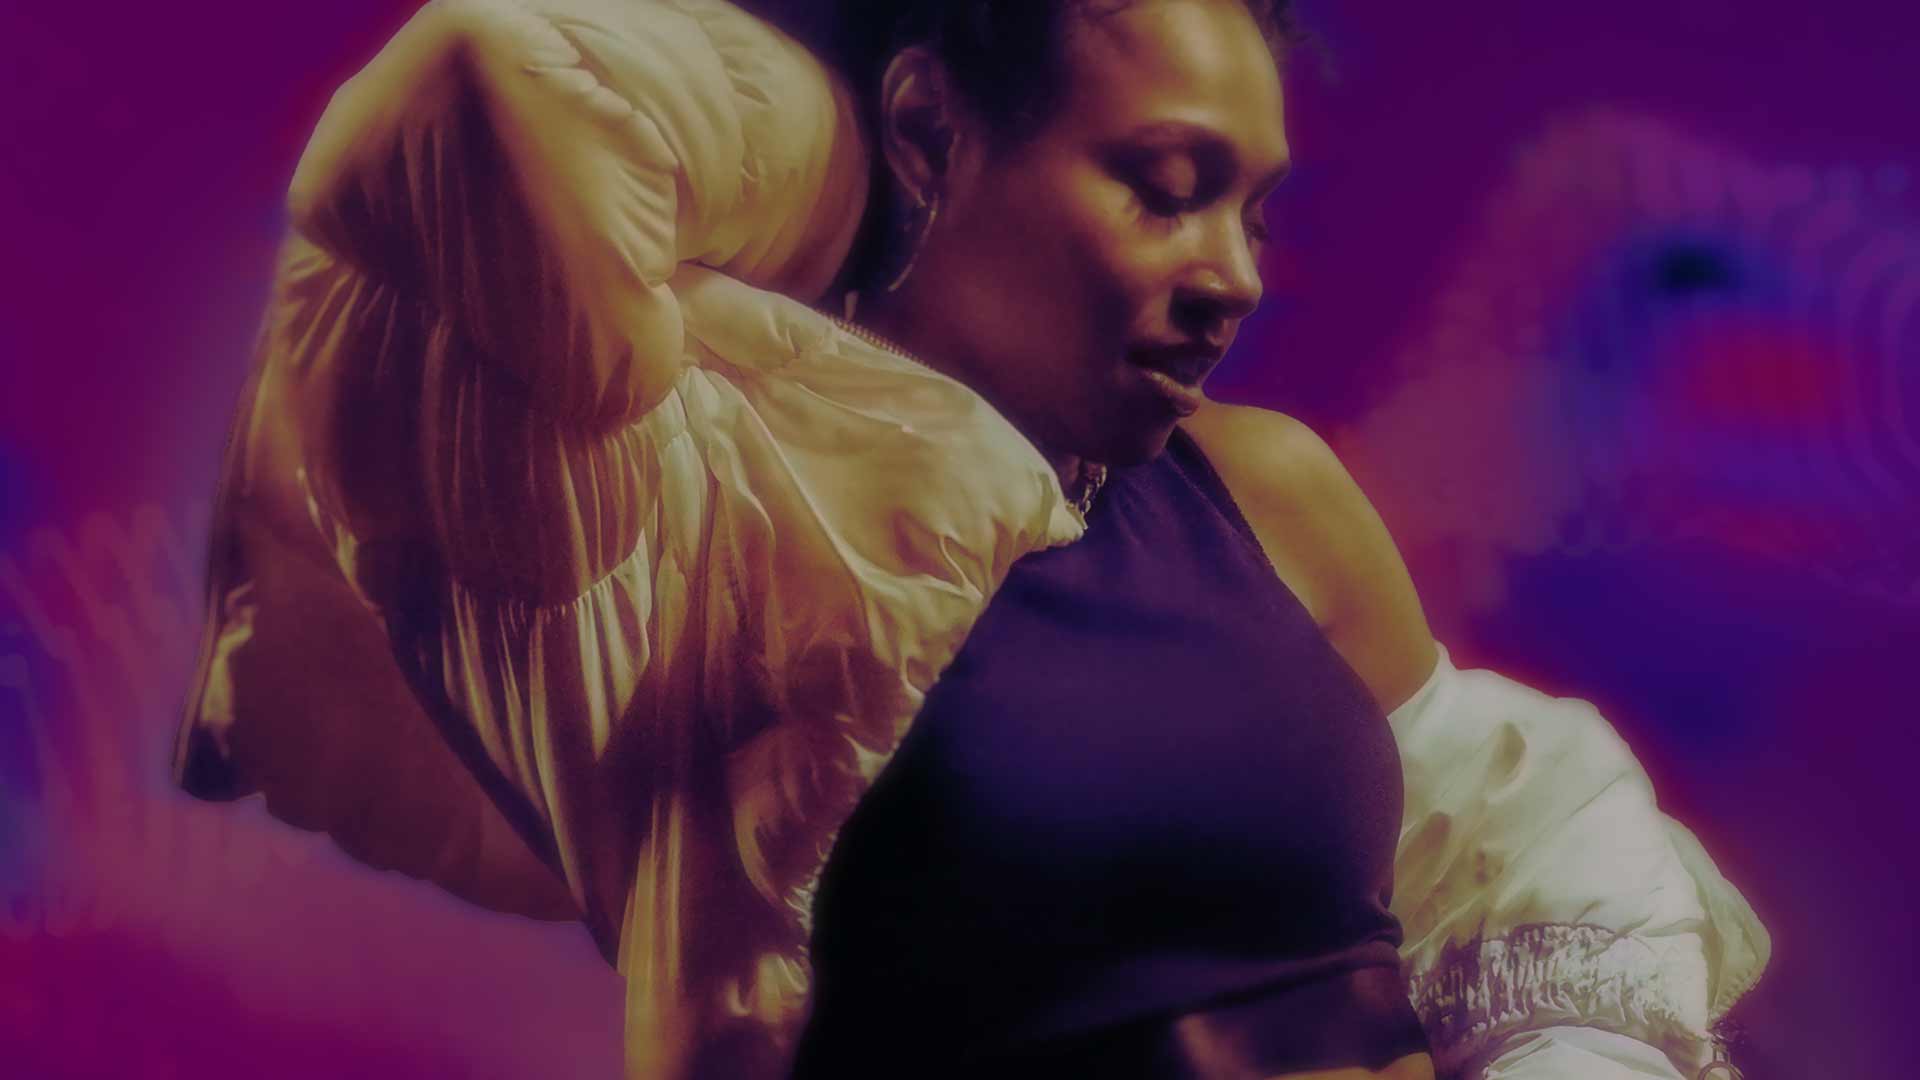 Black female dancer